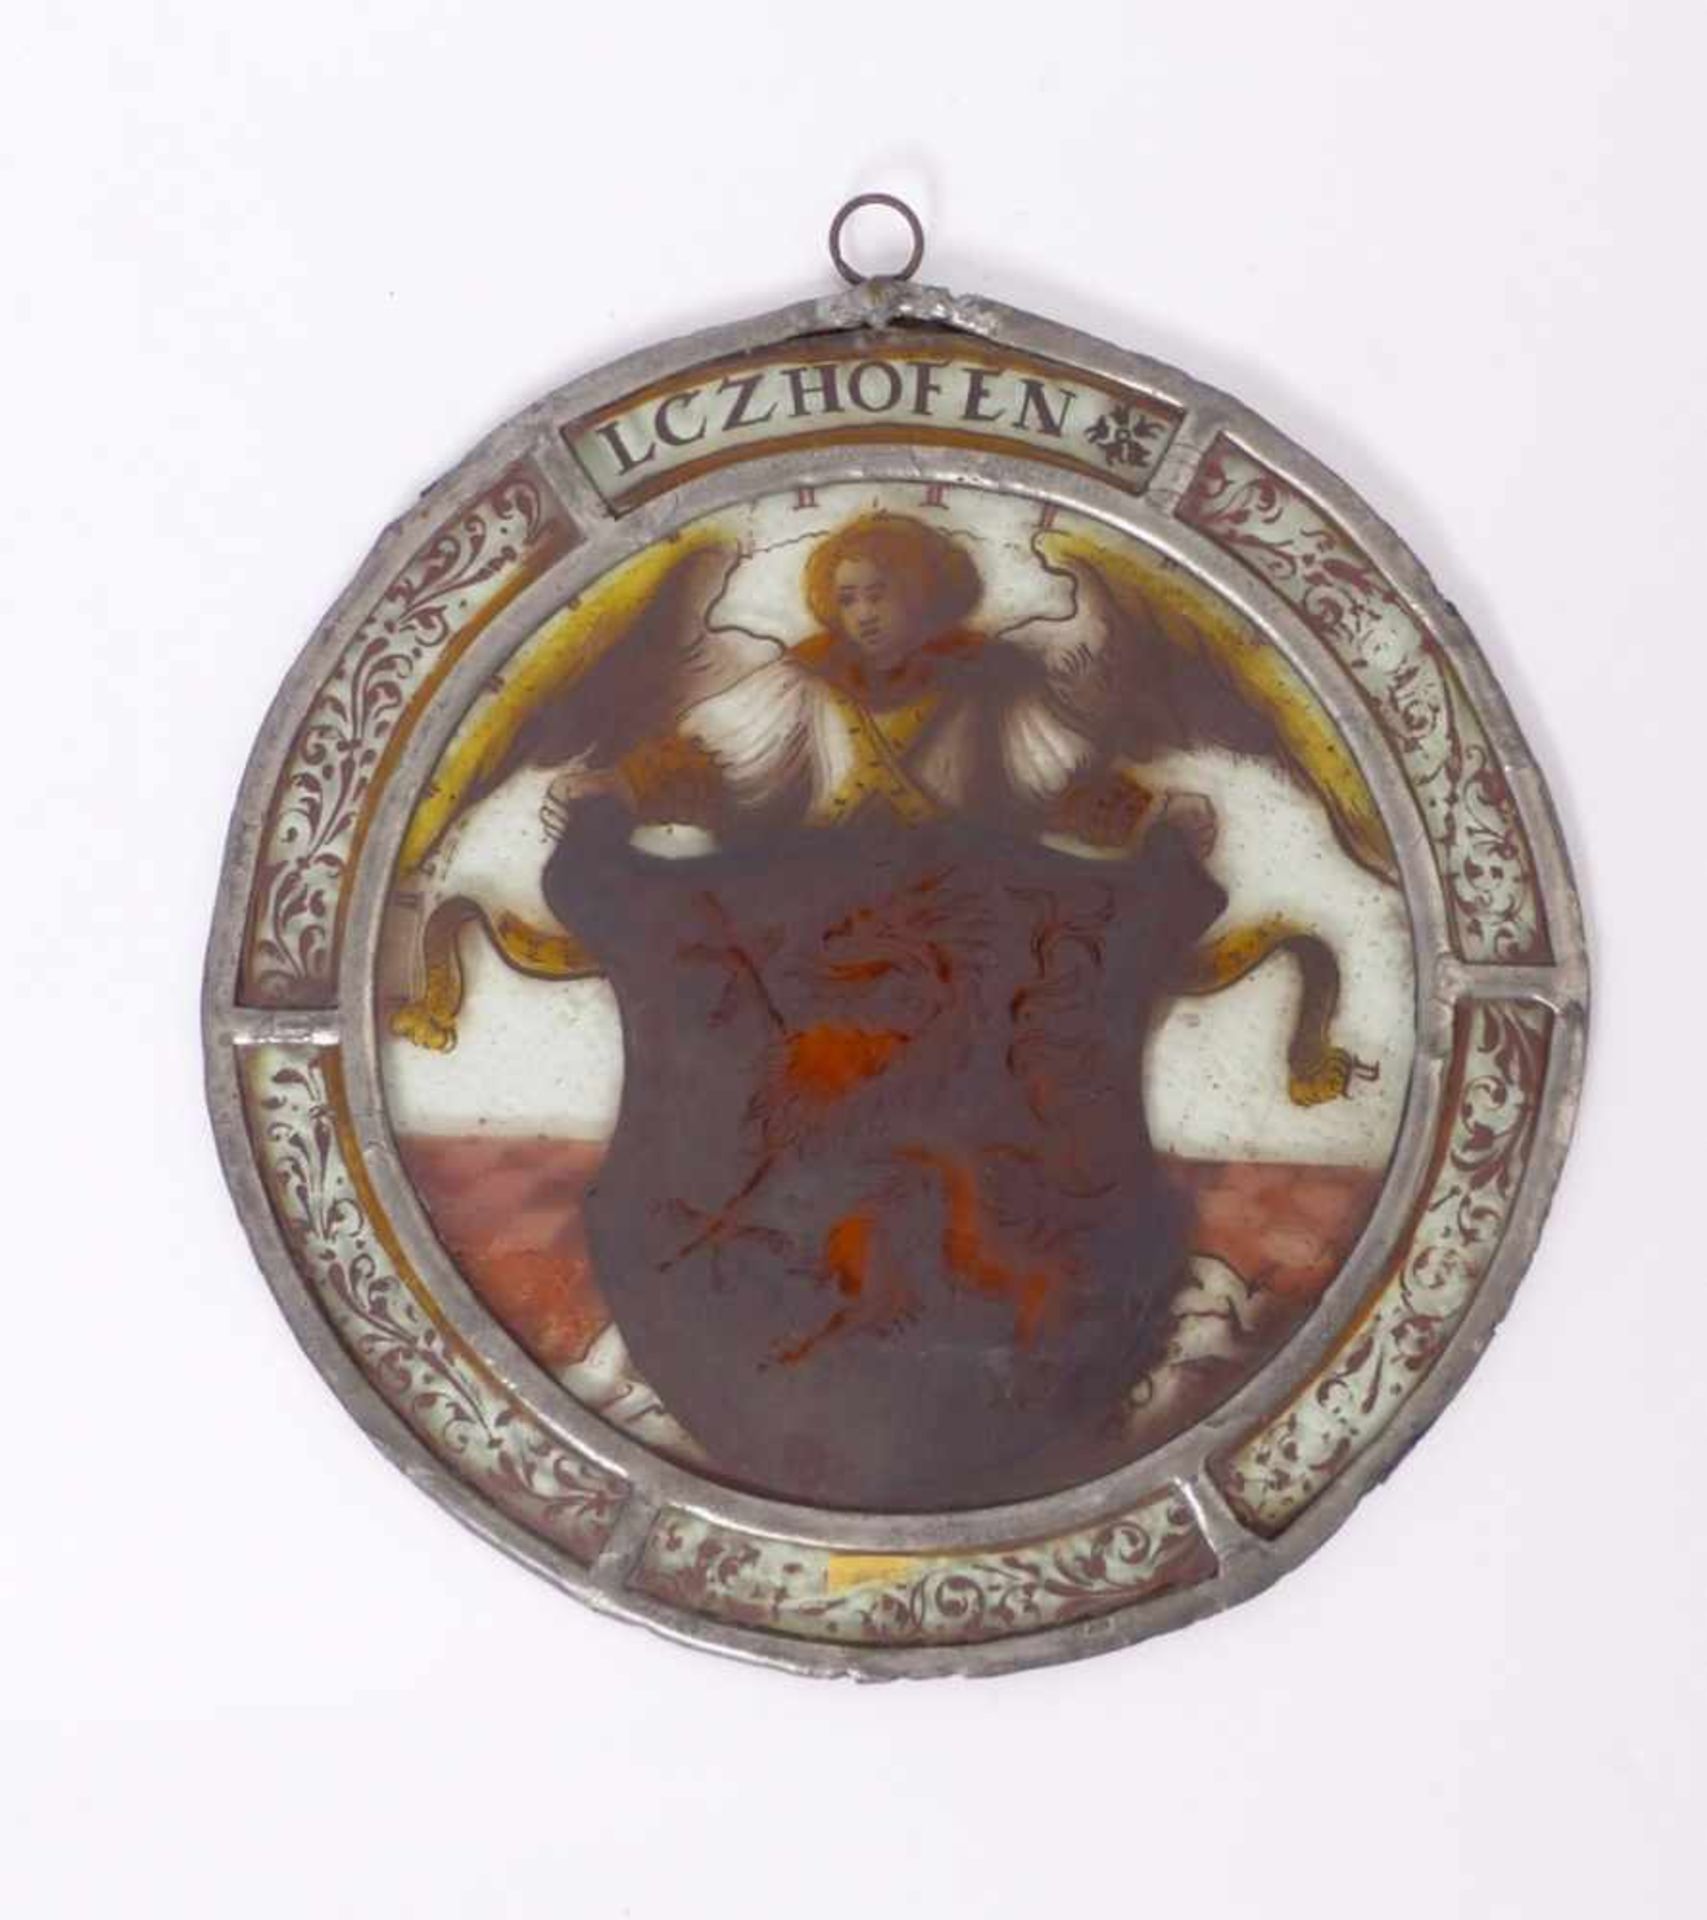 Fensterbild mit Wappen Bayern, 17. Jh. Runde Form, von Engel gehaltene Wappenkartusche mit Greif, - Image 2 of 2